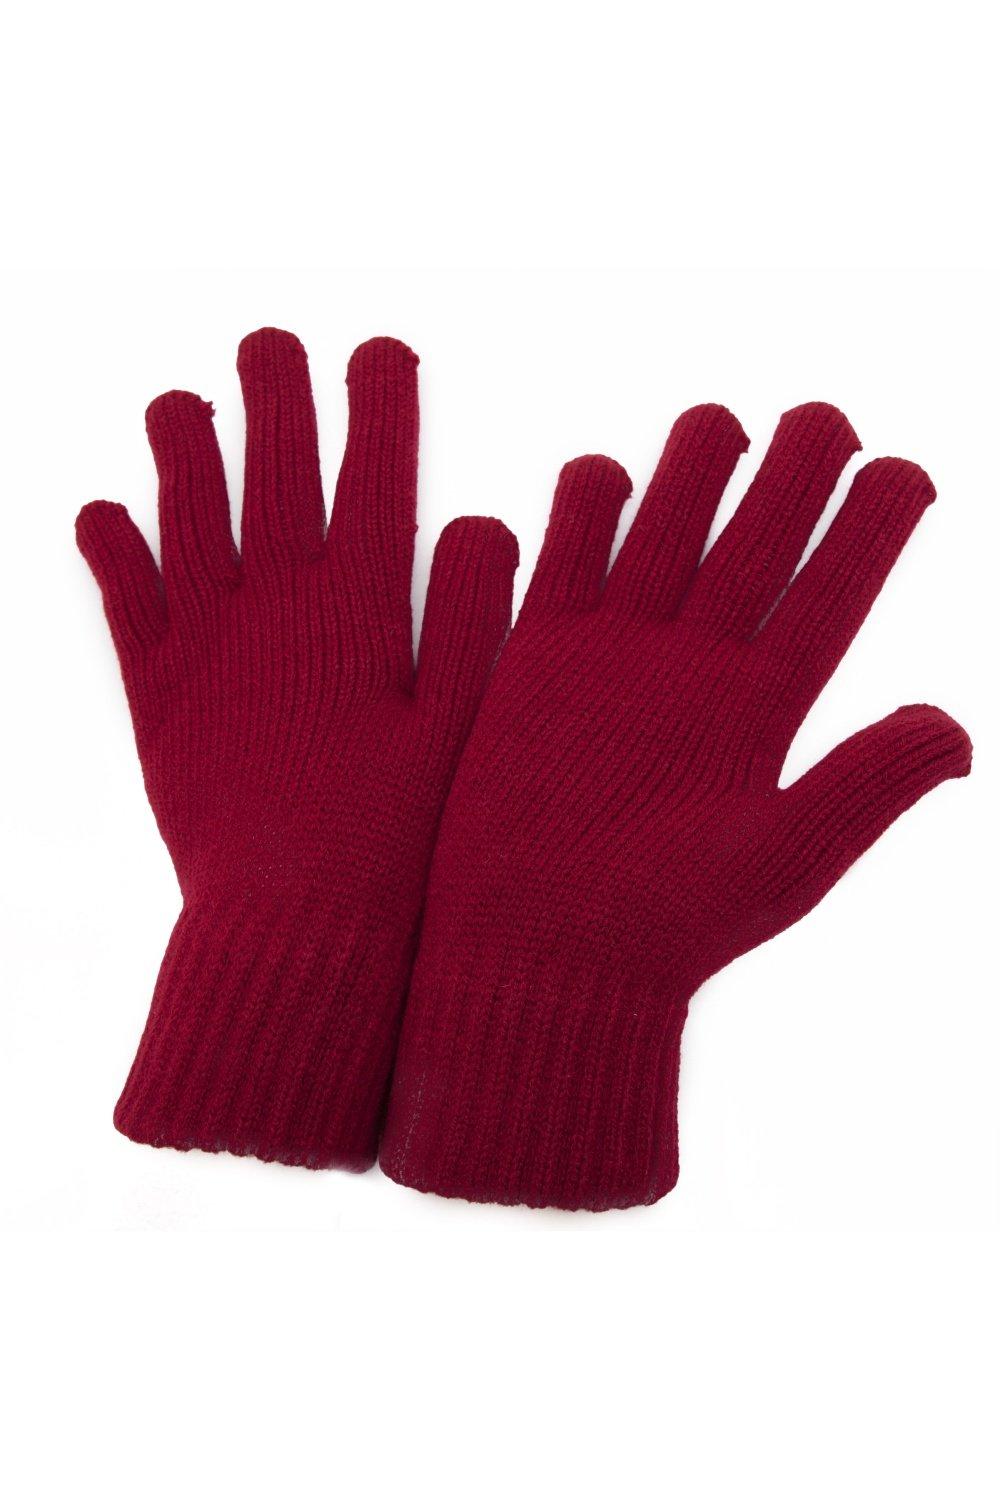 РАСПРОСТРАНЕНИЕ - Зимние перчатки Universal Textiles, красный распродажа термовязаные зимние перчатки universal textiles черный